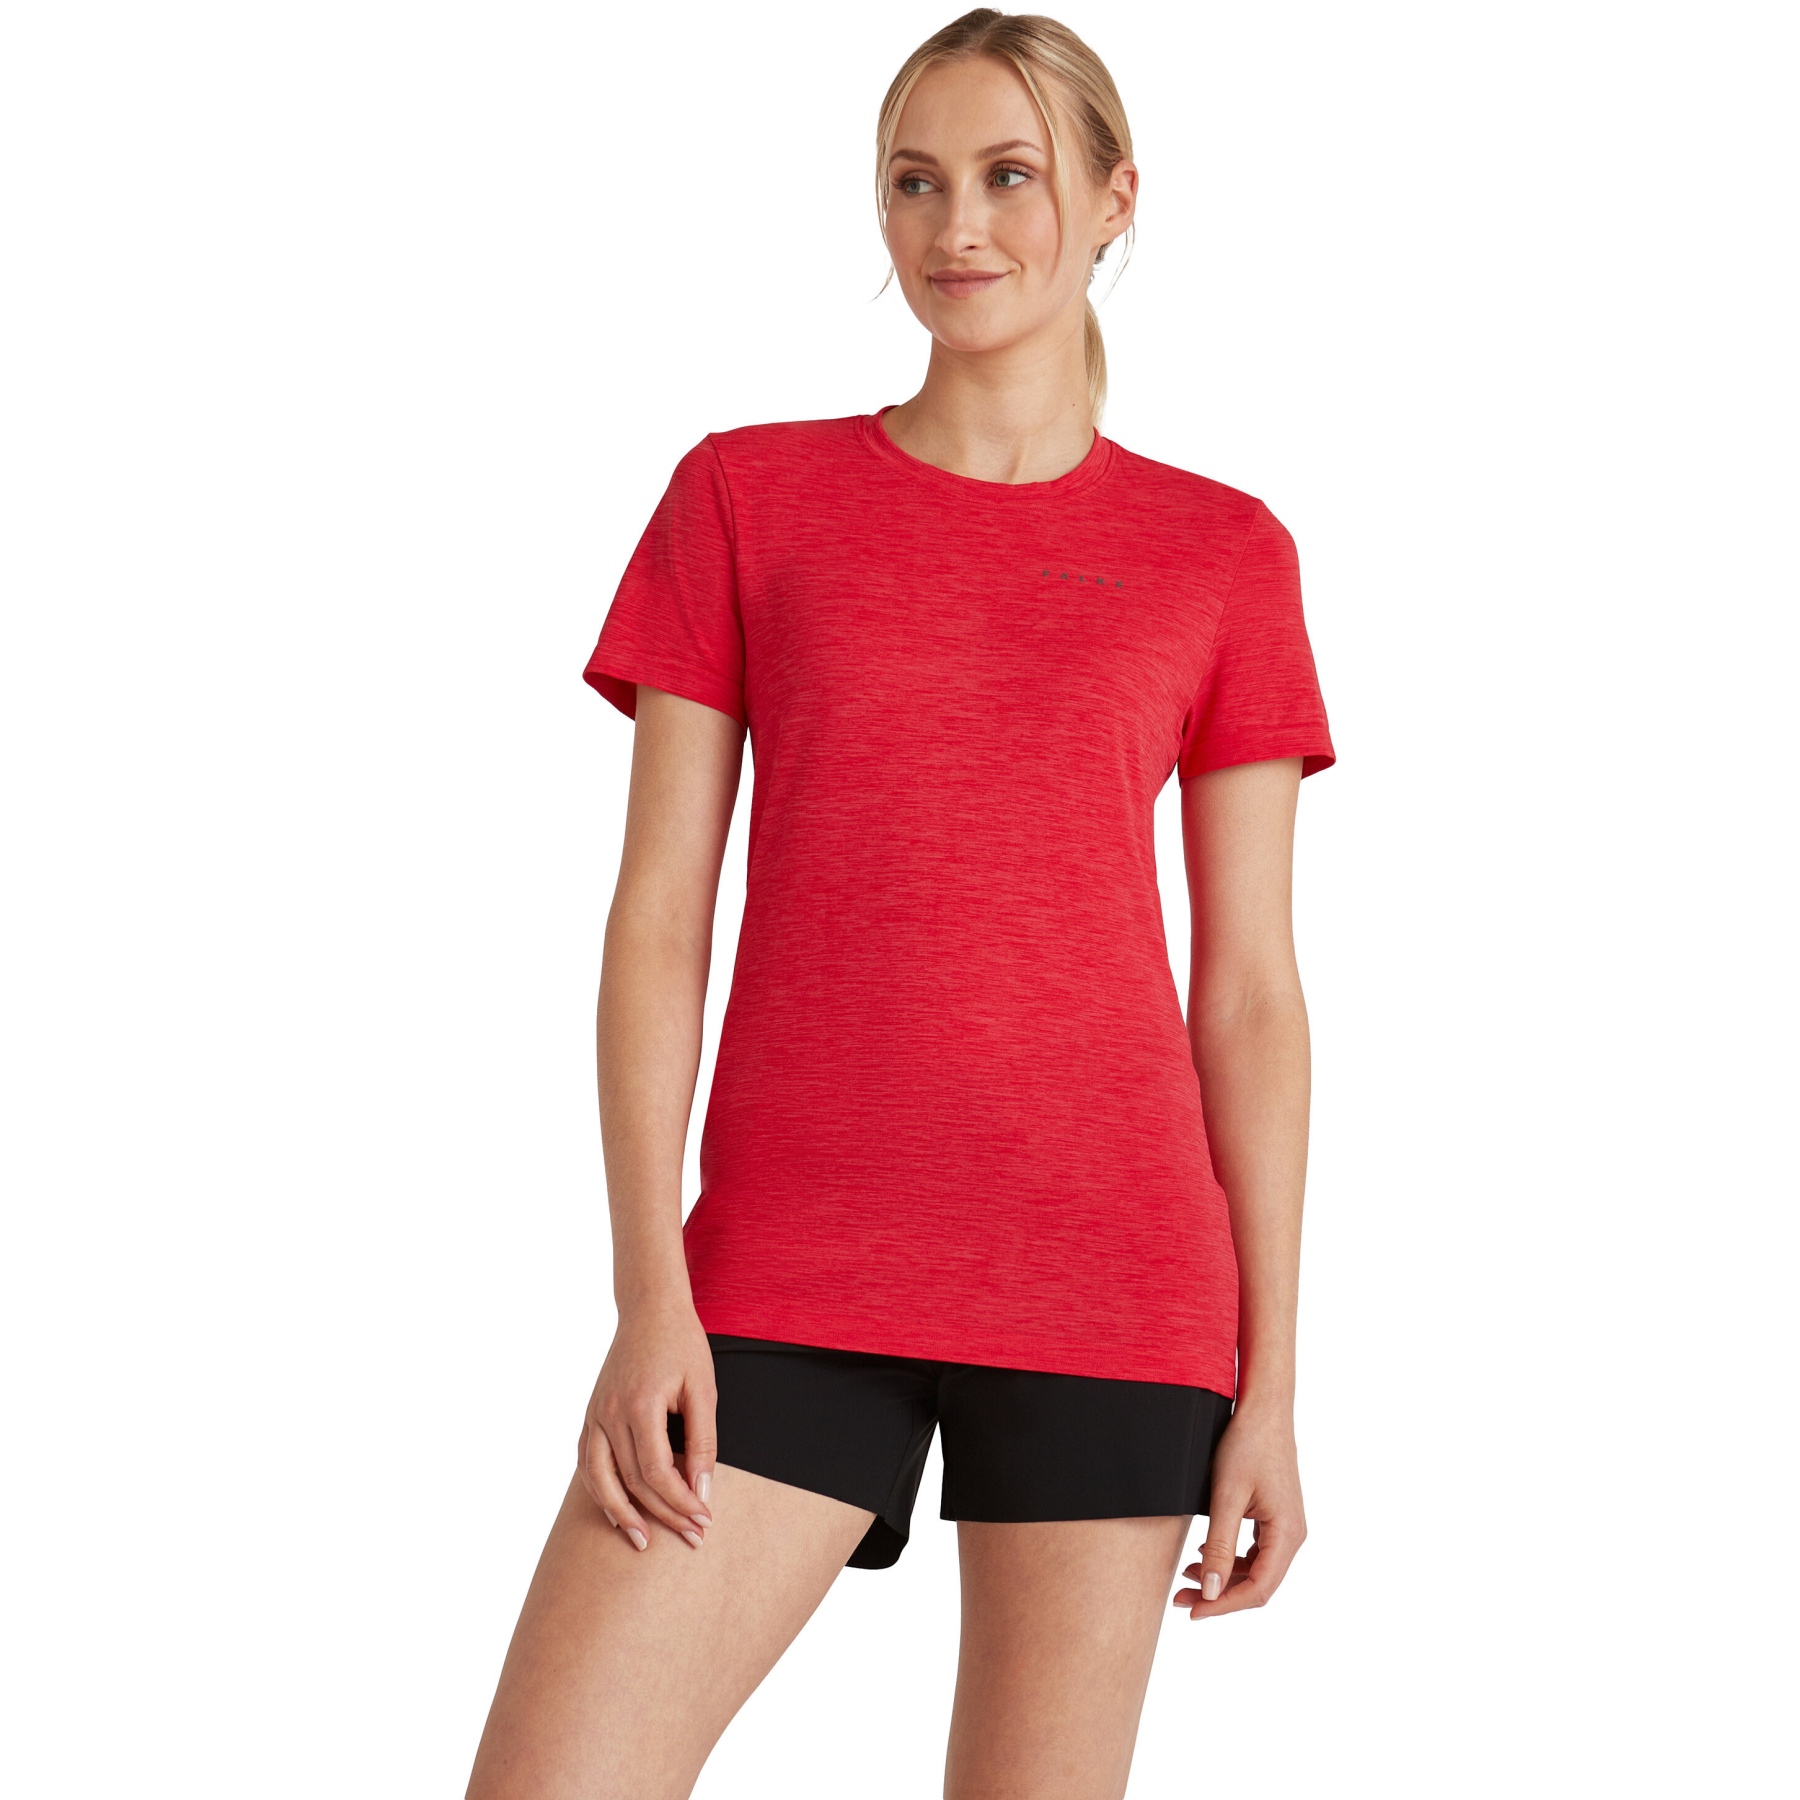 Produktbild von Falke RU Seamless Melange T-Shirt Damen - scarlet 8070